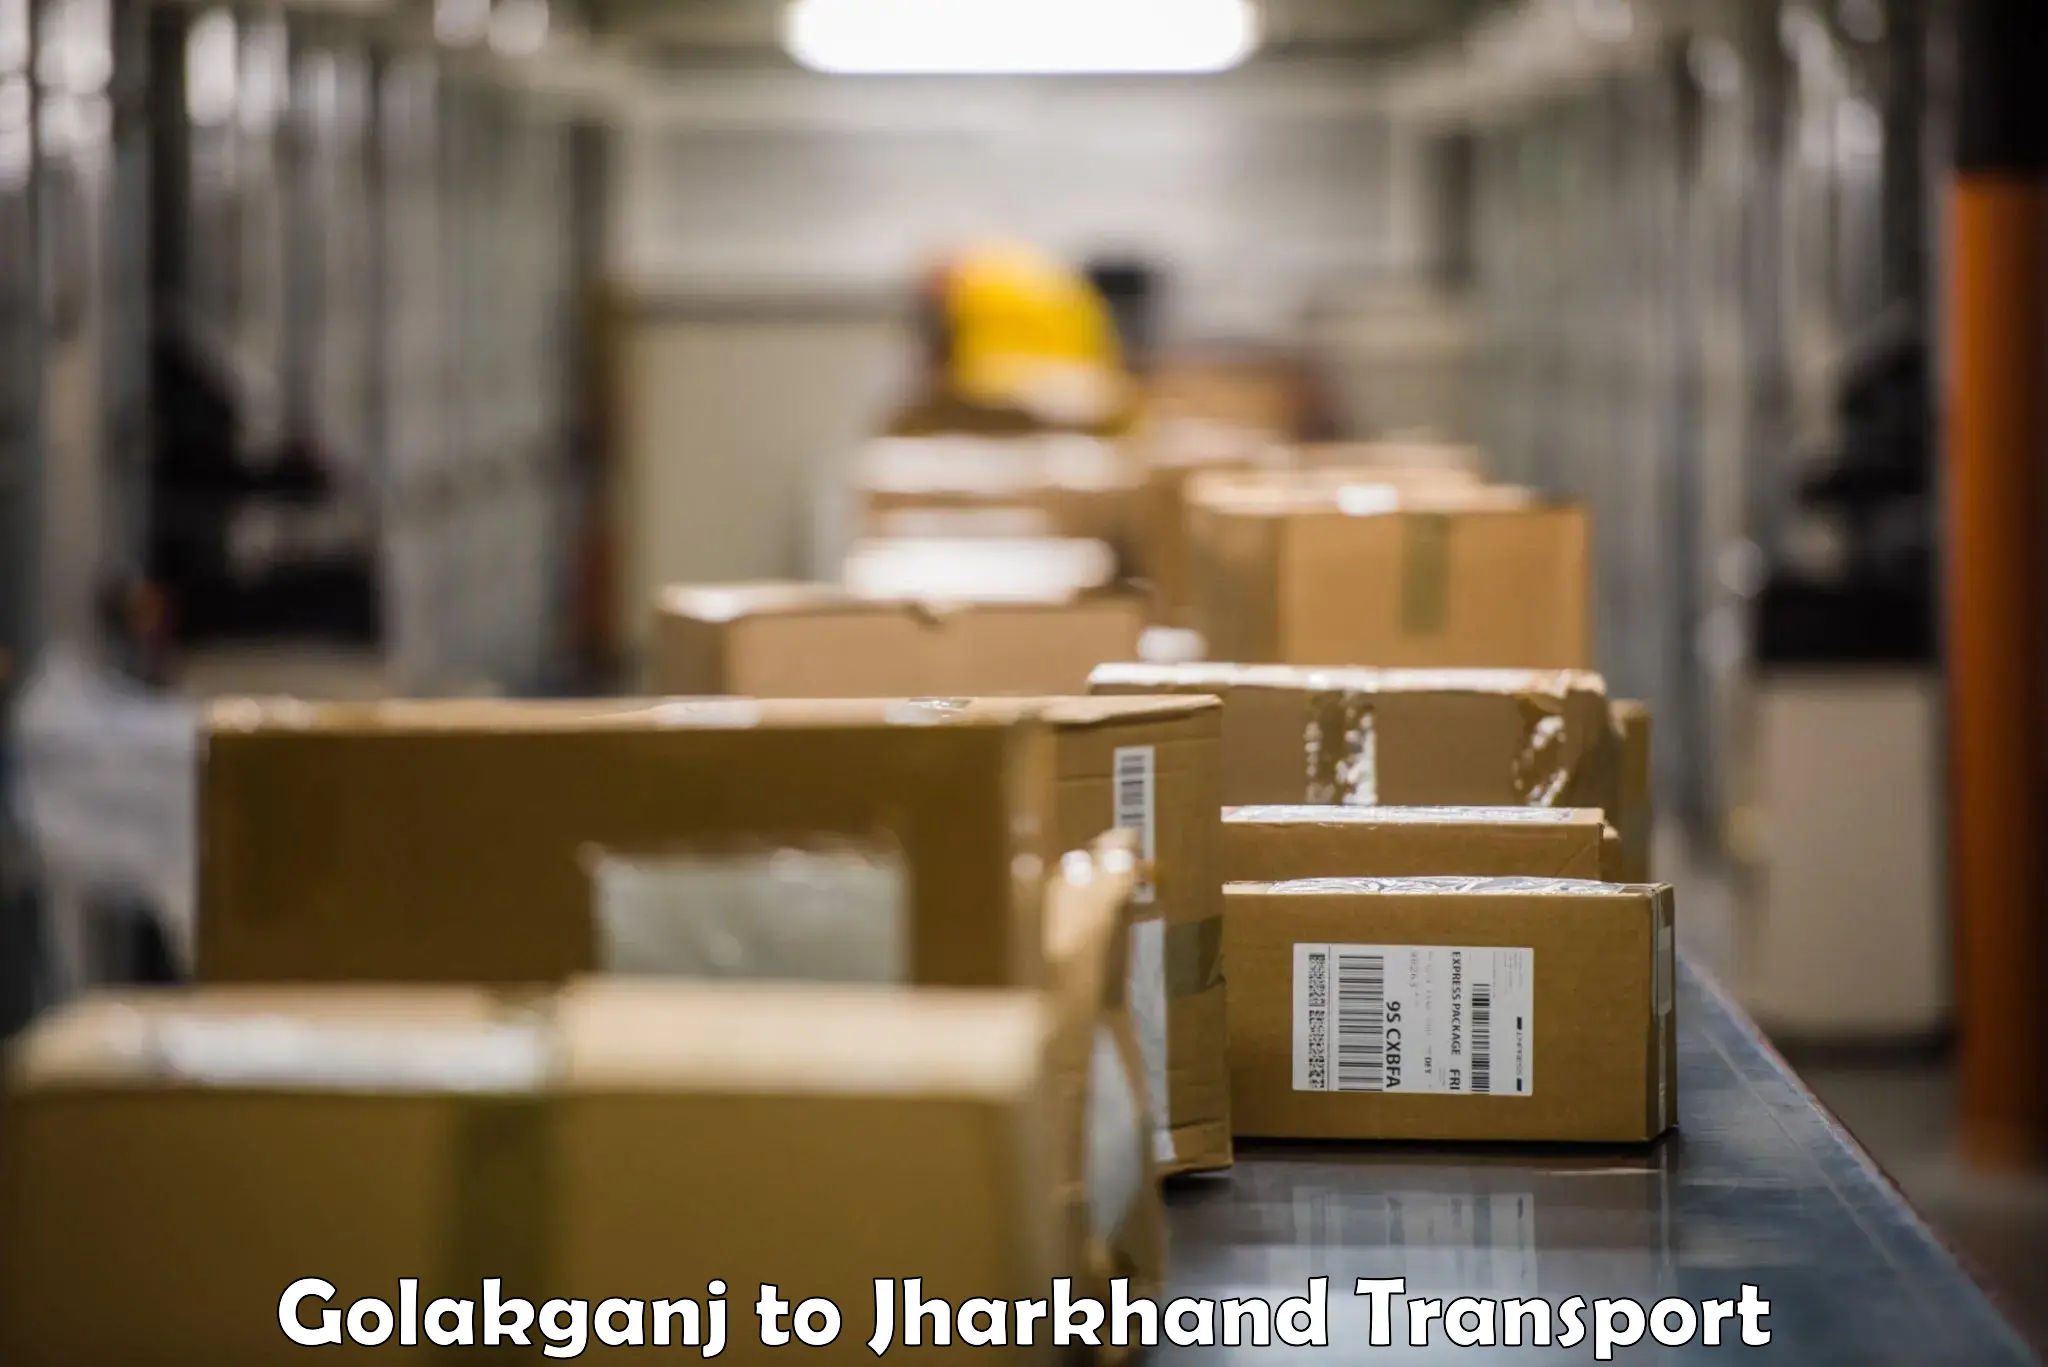 Shipping partner Golakganj to Hazaribagh